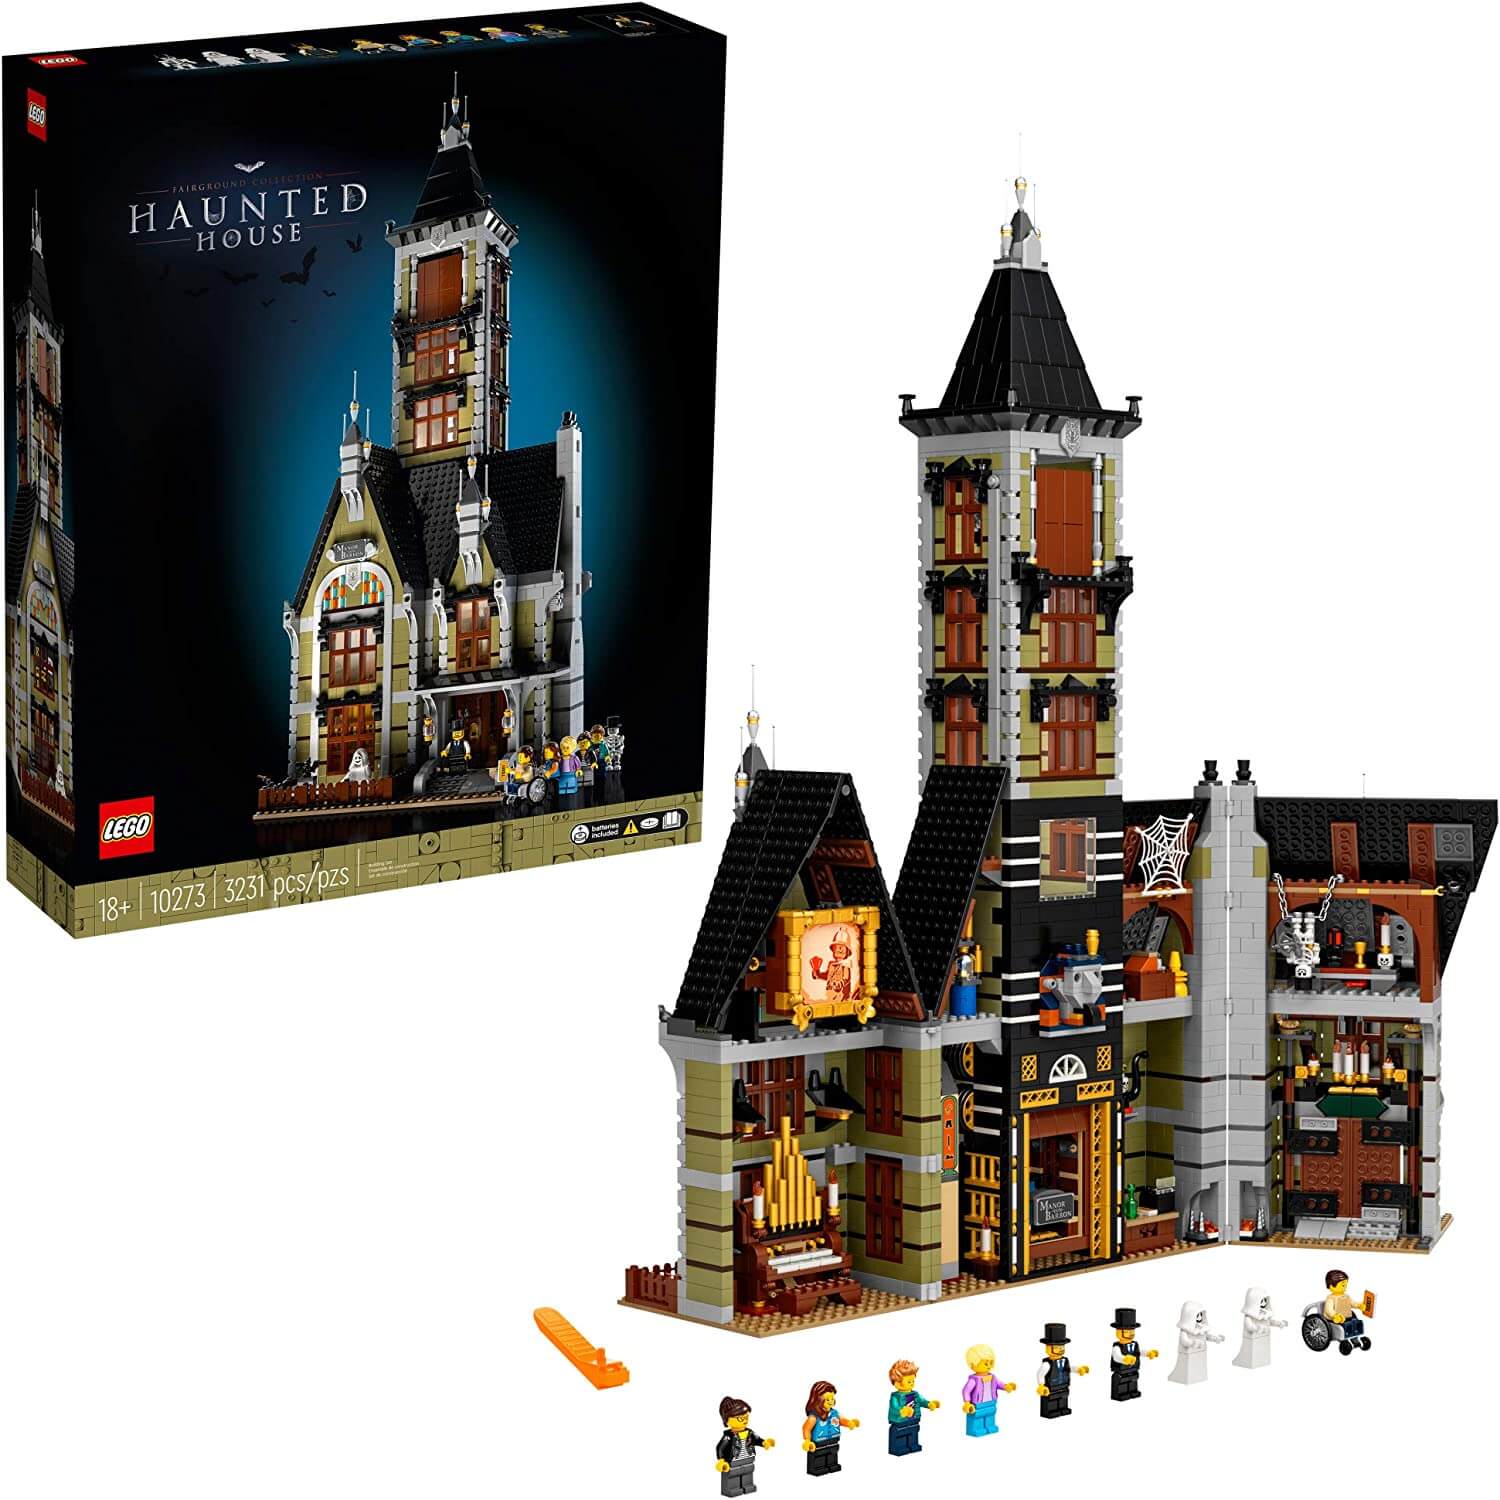 ка 15 дом с привидениями электронная схема Конструктор Дом с привидениями 10273 LEGO Creator